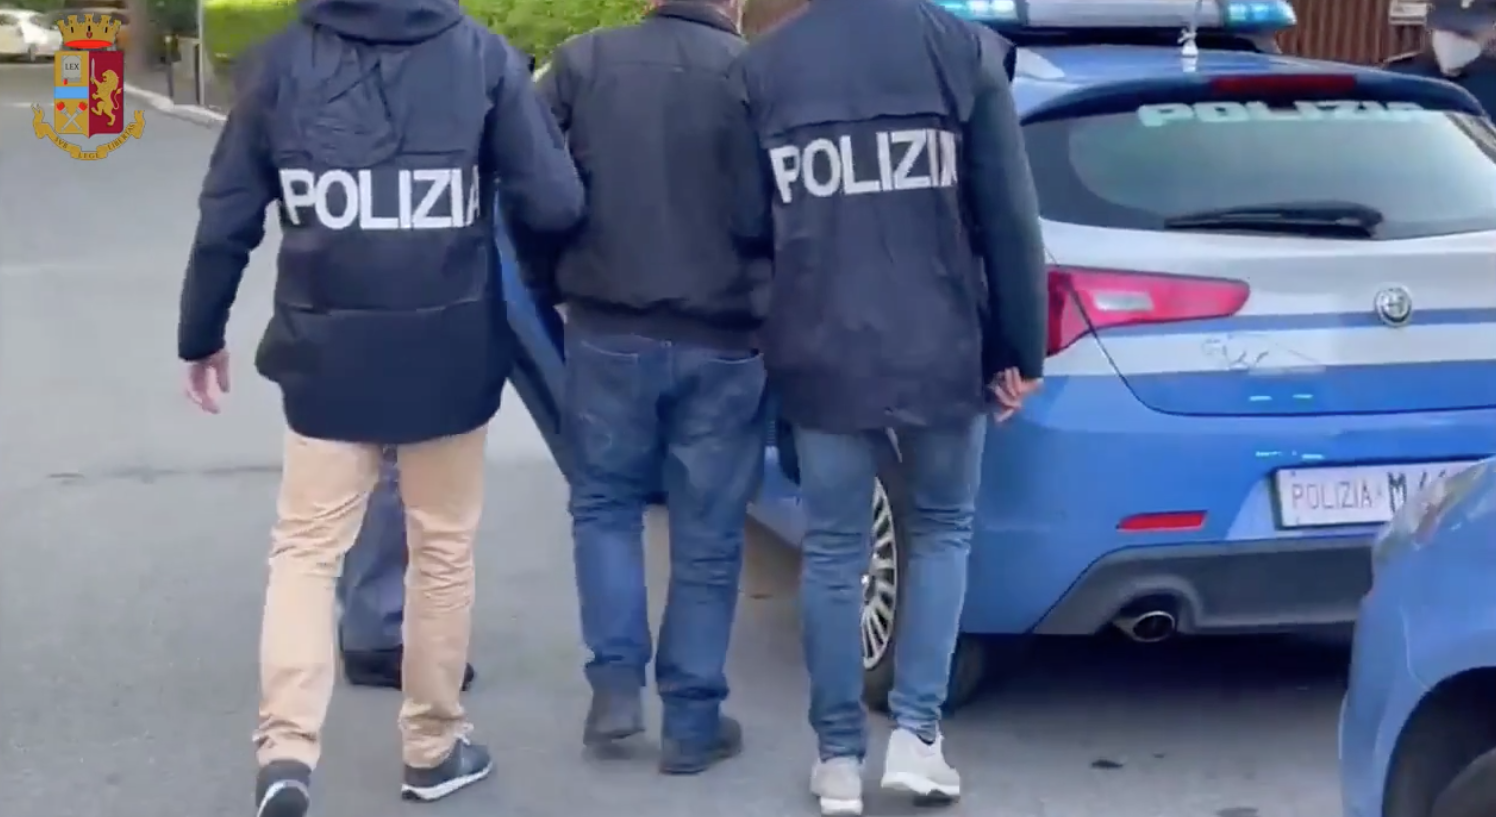 Arresto Polizia nei quartieri popolari di roma